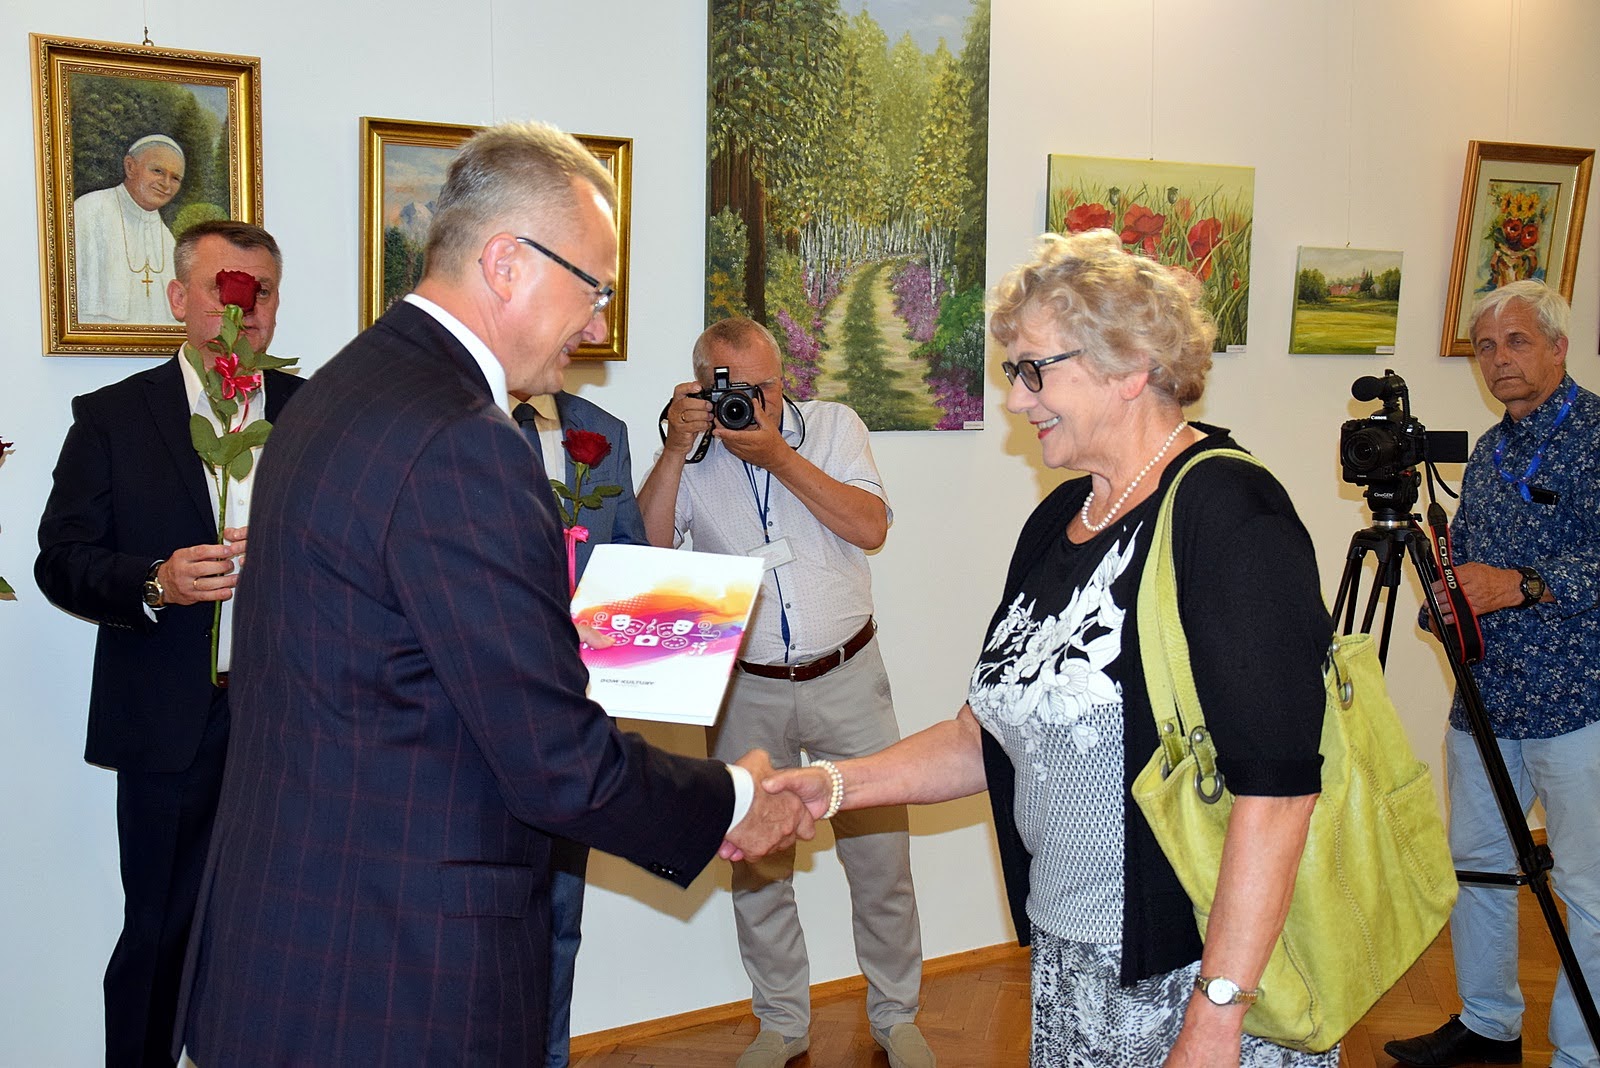 Część oficjalną wydarzenia zakończyło wręczenie artystom pamiątkowych podziękowań przez burmistrza Arkadiusza Sulimę.